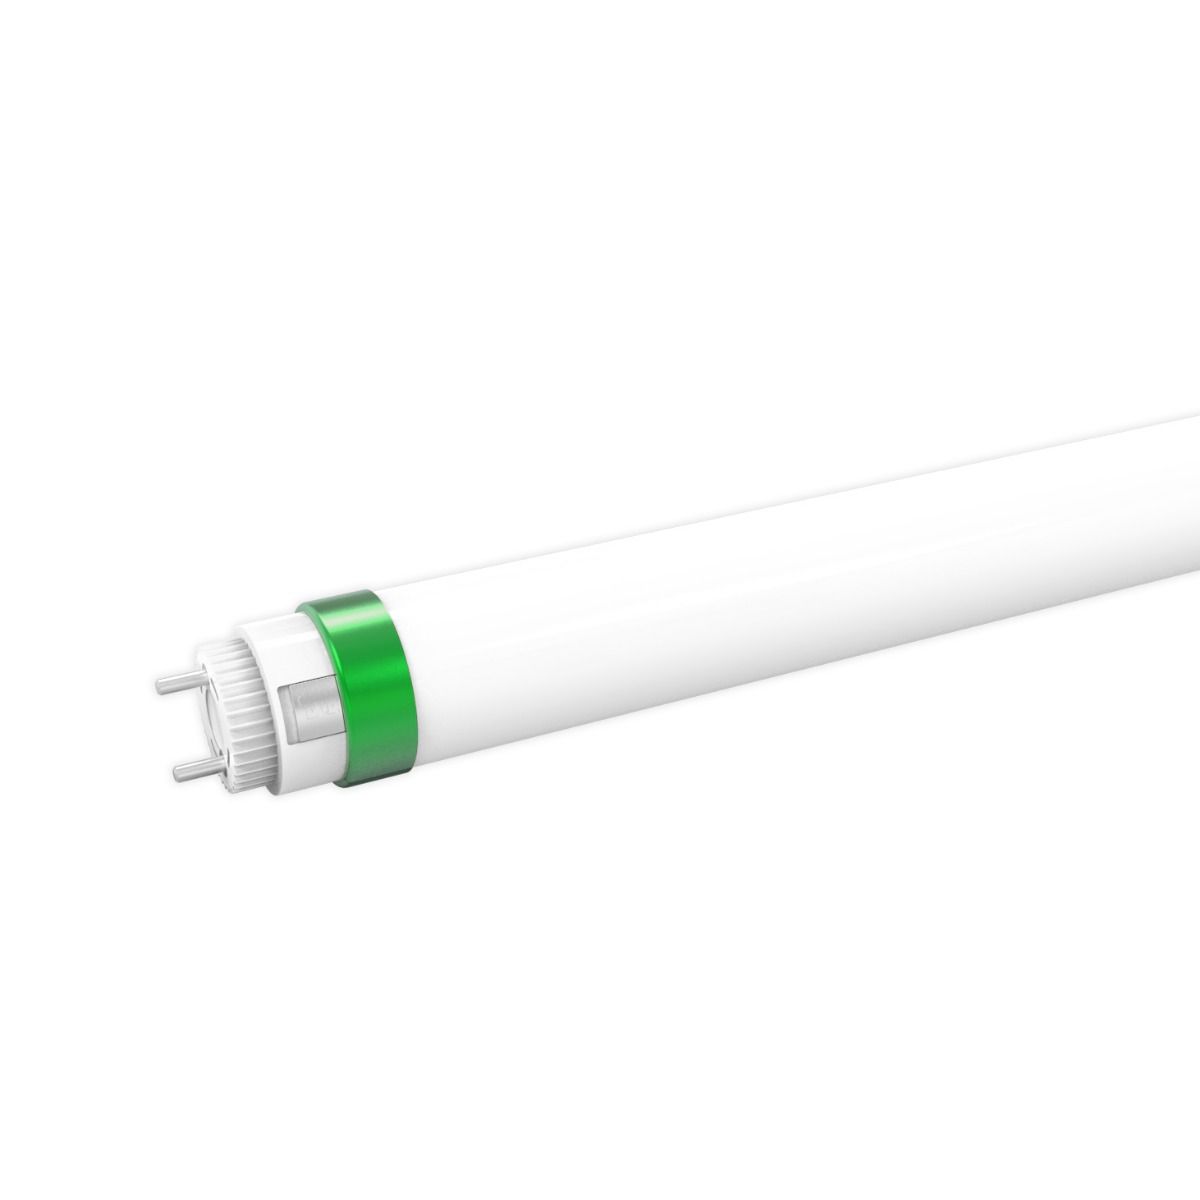 Wreed Uitverkoop persoonlijkheid Verda Lumen T8 LED TL buis - hoge efficiëntie (160lm per watt) - draaibare  eindkap - 120cm - G13 - 18W - niet-dimbaar - 4000K | Lichtkoning